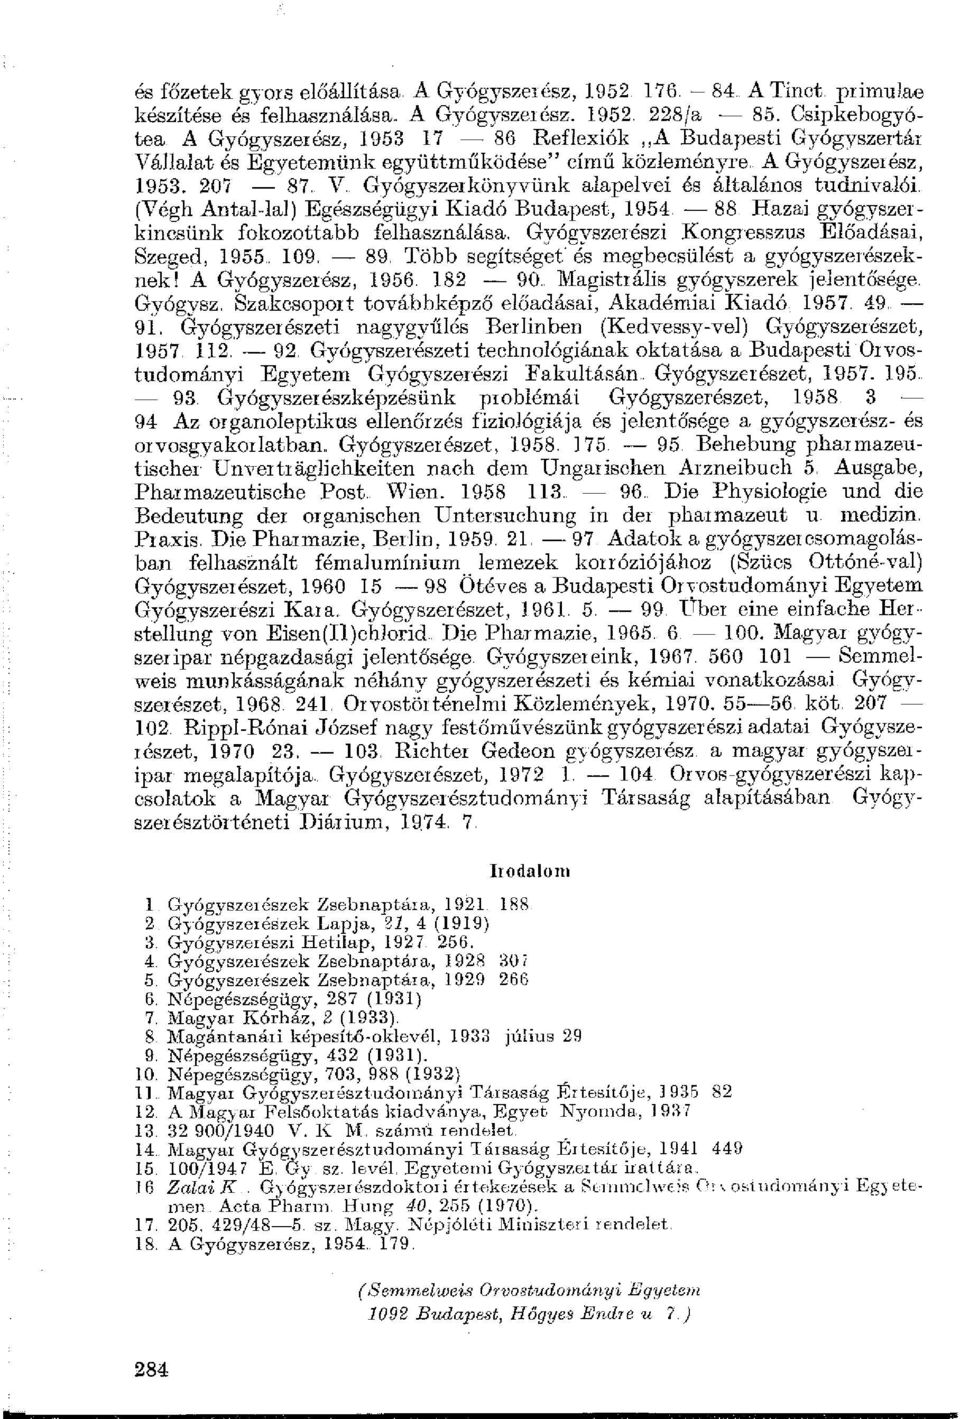 V Gyógyszerkönyvünk alapelvei és általános tudnivalói (Végh Antal-lai) Egészségügyi Kiadó Budapest, 1954. - 88 Hazai gyógyszerkincsünk fokozottabb felhasználása.